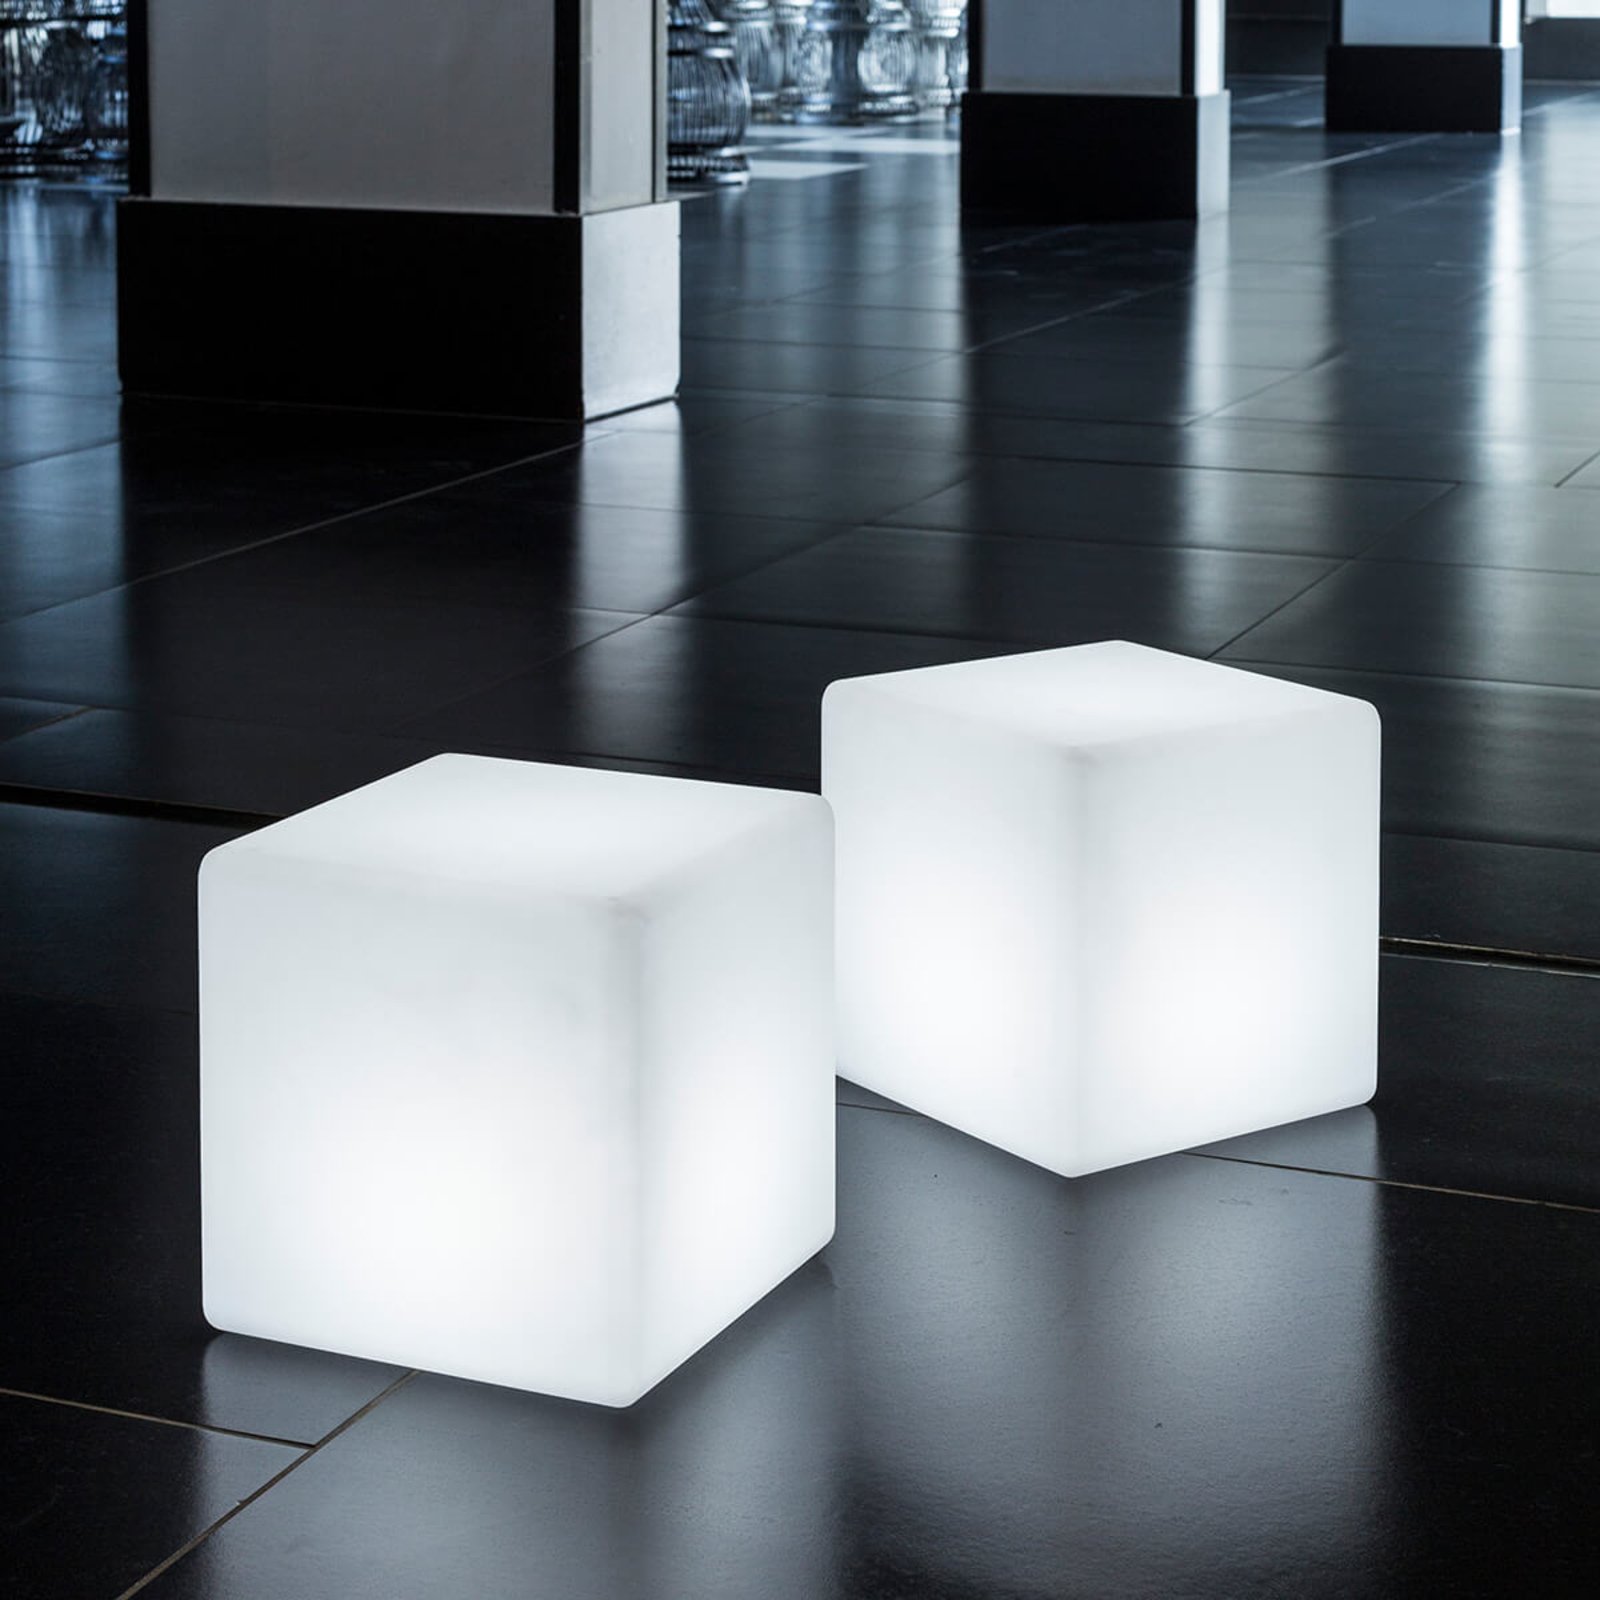 Cube - en lysende kube til udendørs brug